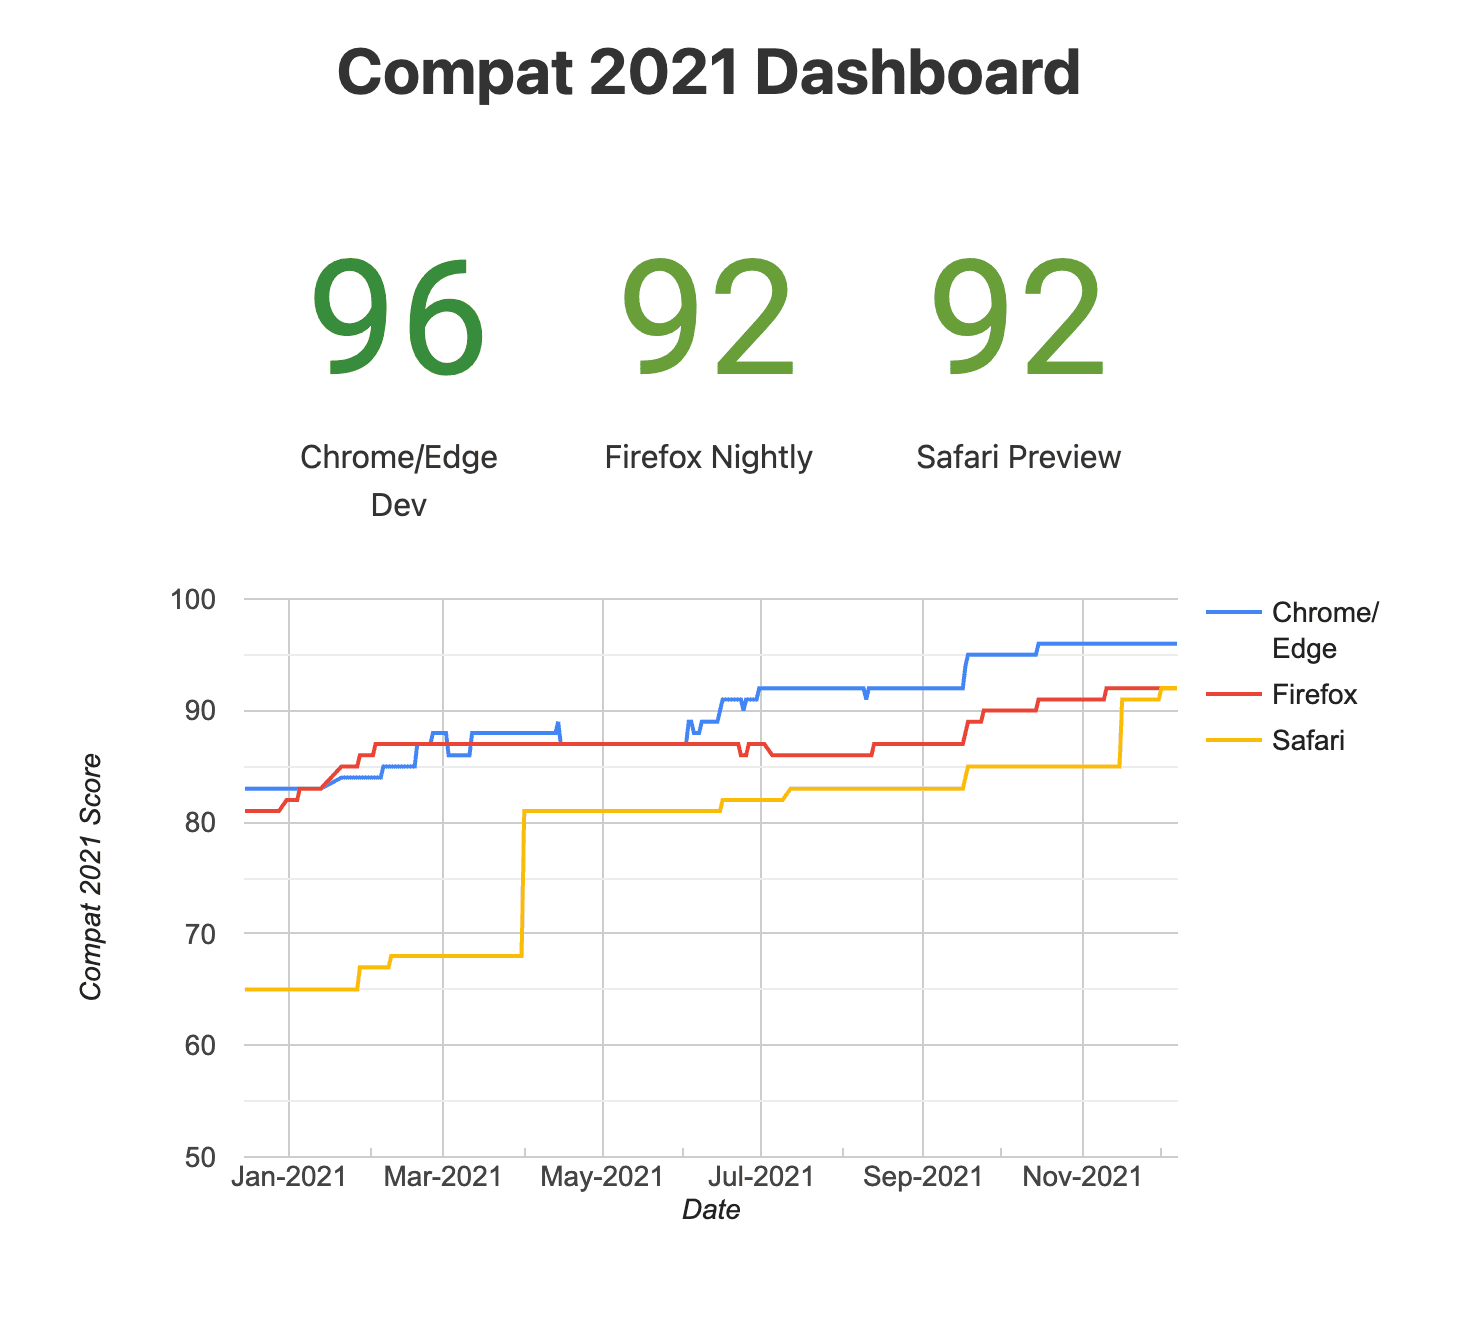 Снимок панели управления Compat 2021 (экспериментальные браузеры)